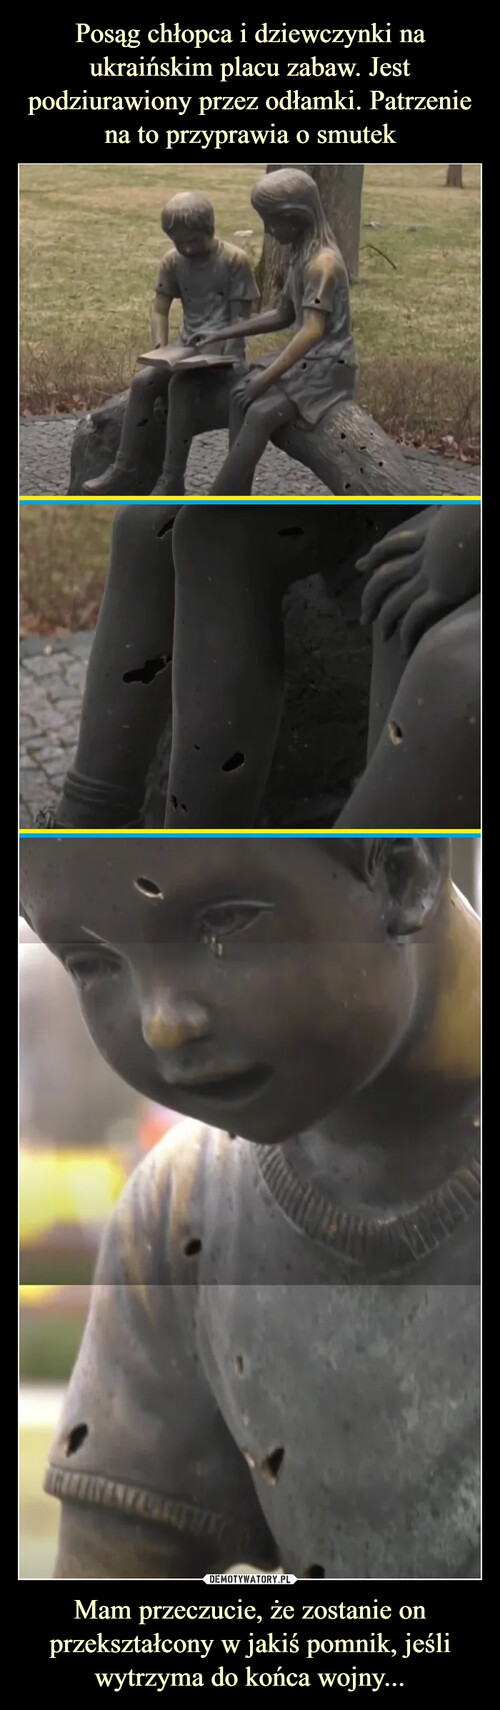 Posąg chłopca i dziewczynki na ukraińskim placu zabaw. Jest podziurawiony przez odłamki. Patrzenie na to przyprawia o smutek Mam przeczucie, że zostanie on przekształcony w jakiś pomnik, jeśli wytrzyma do końca wojny...